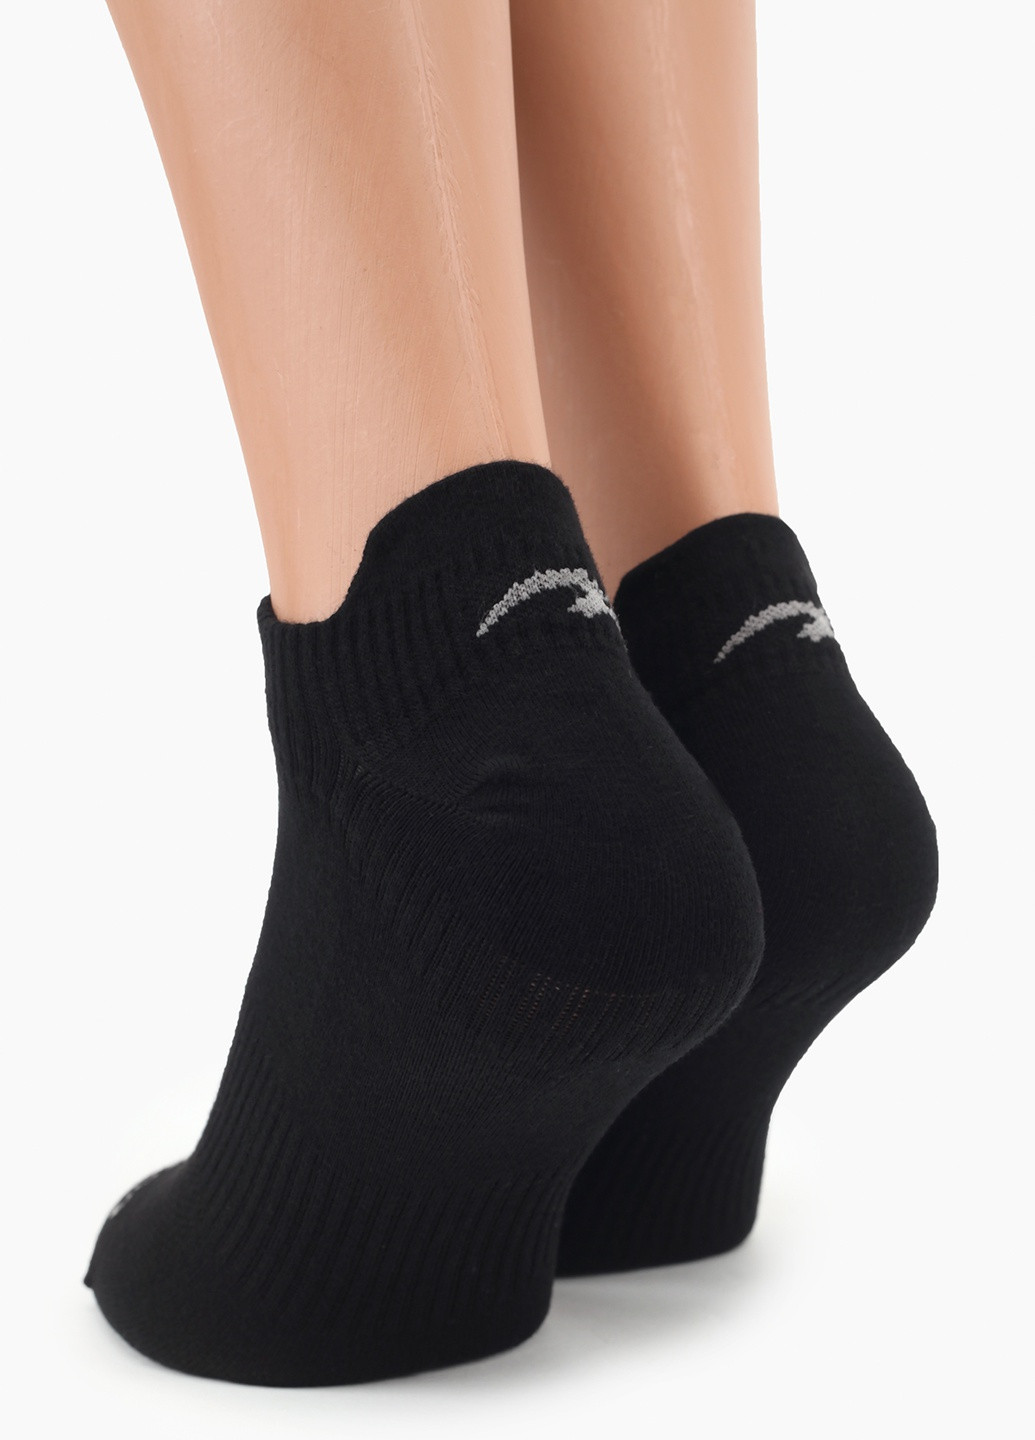 Шкарпетки фітнес Maraton (256017642)